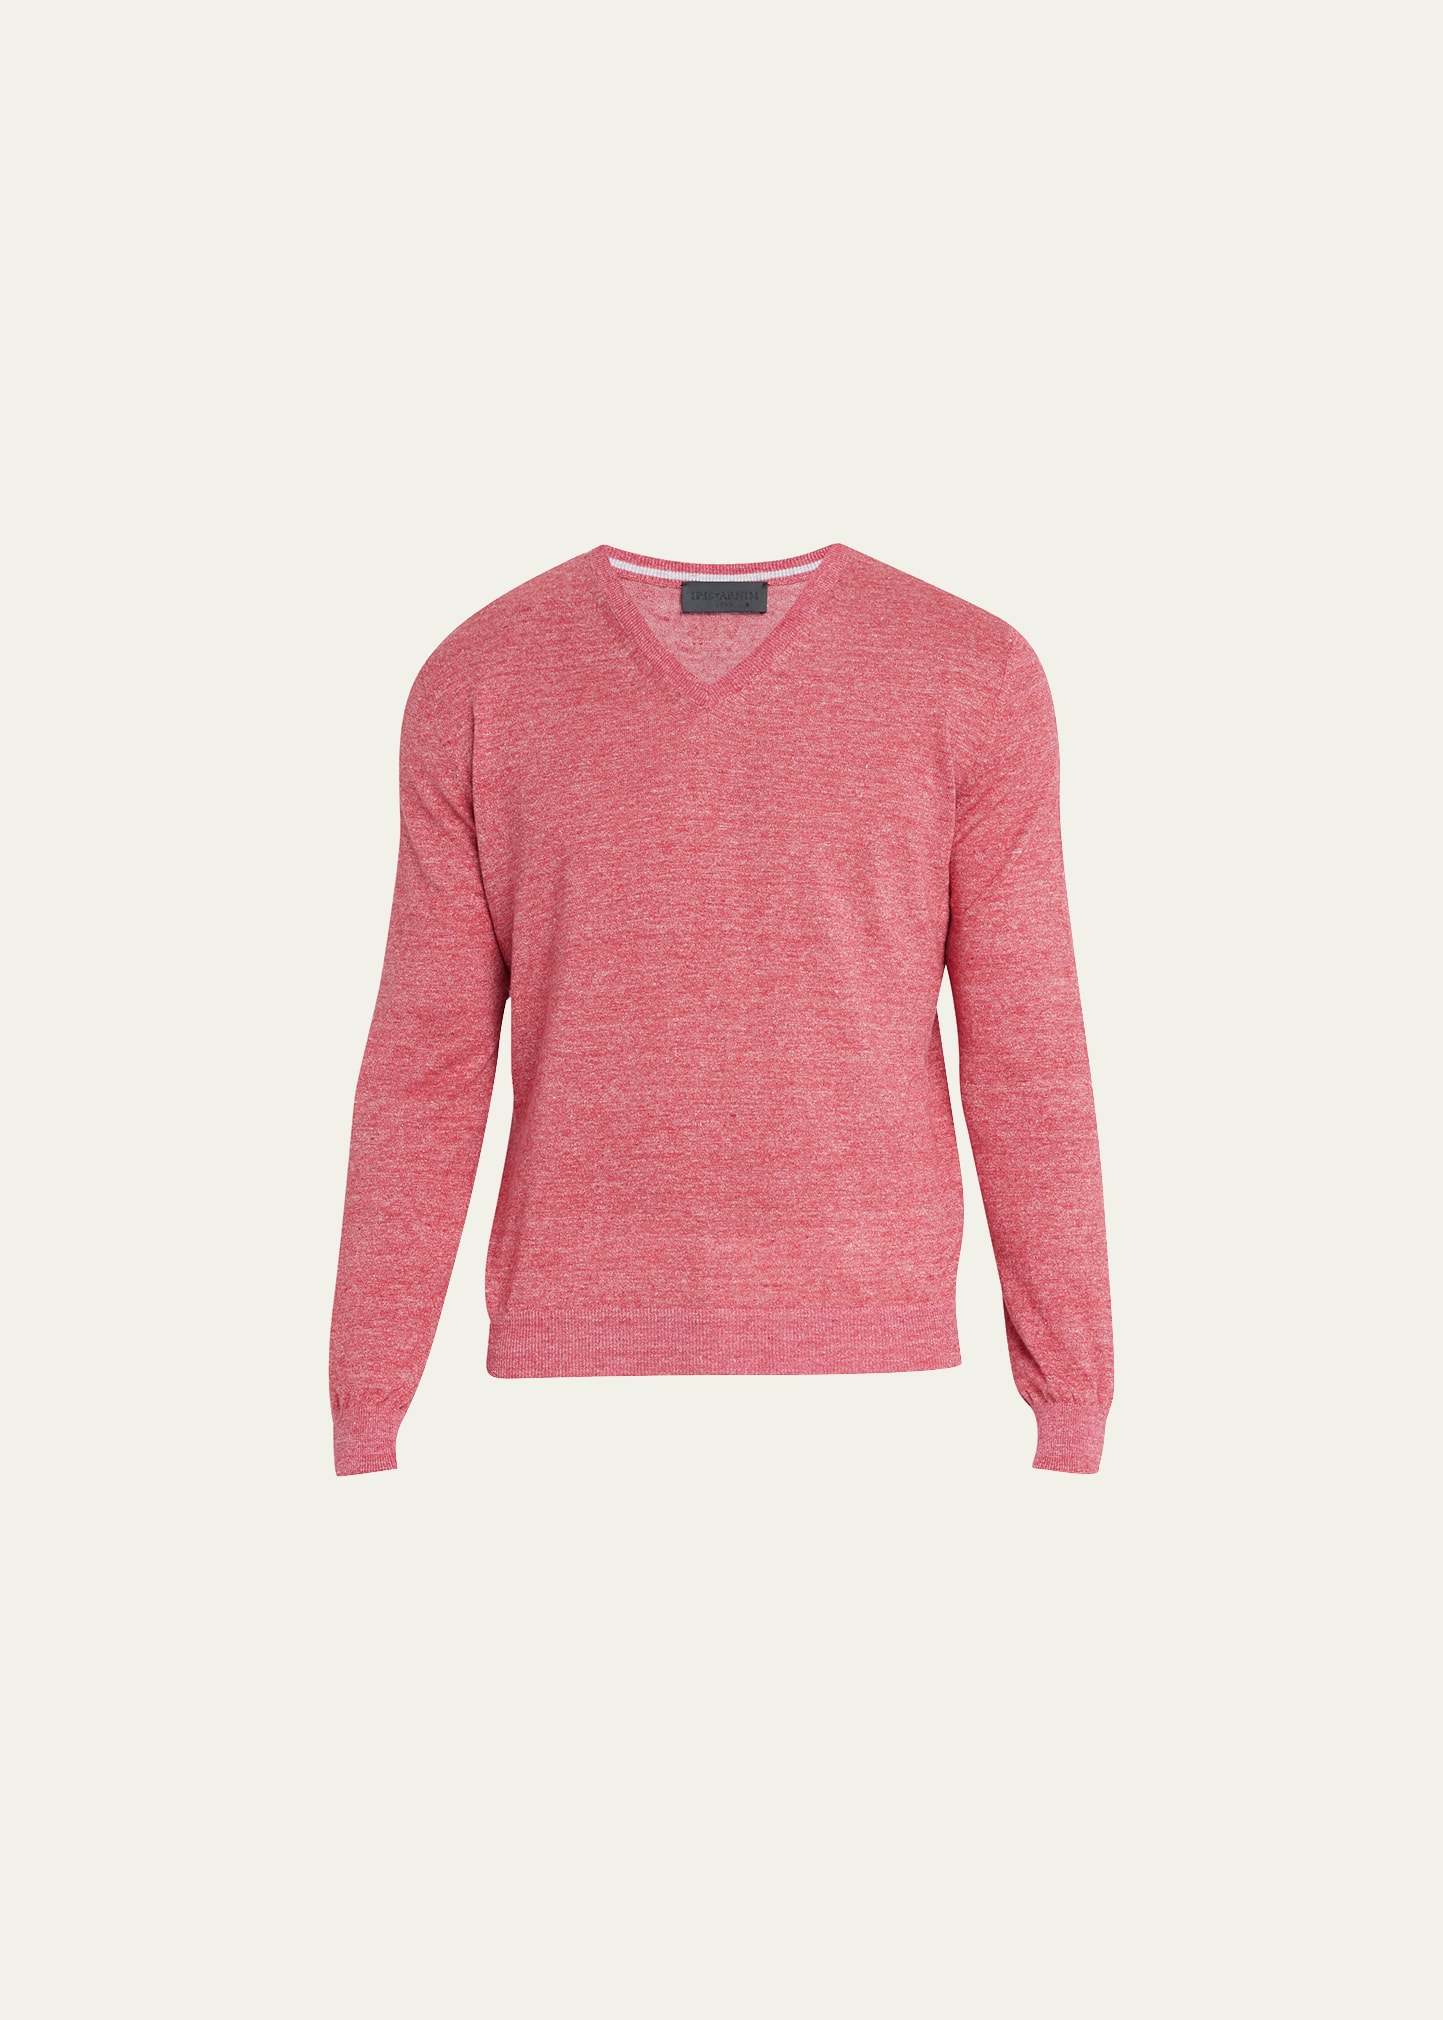 Iris Von Arnim Men's Karl Heathered Knit Linen-Blend Sweater